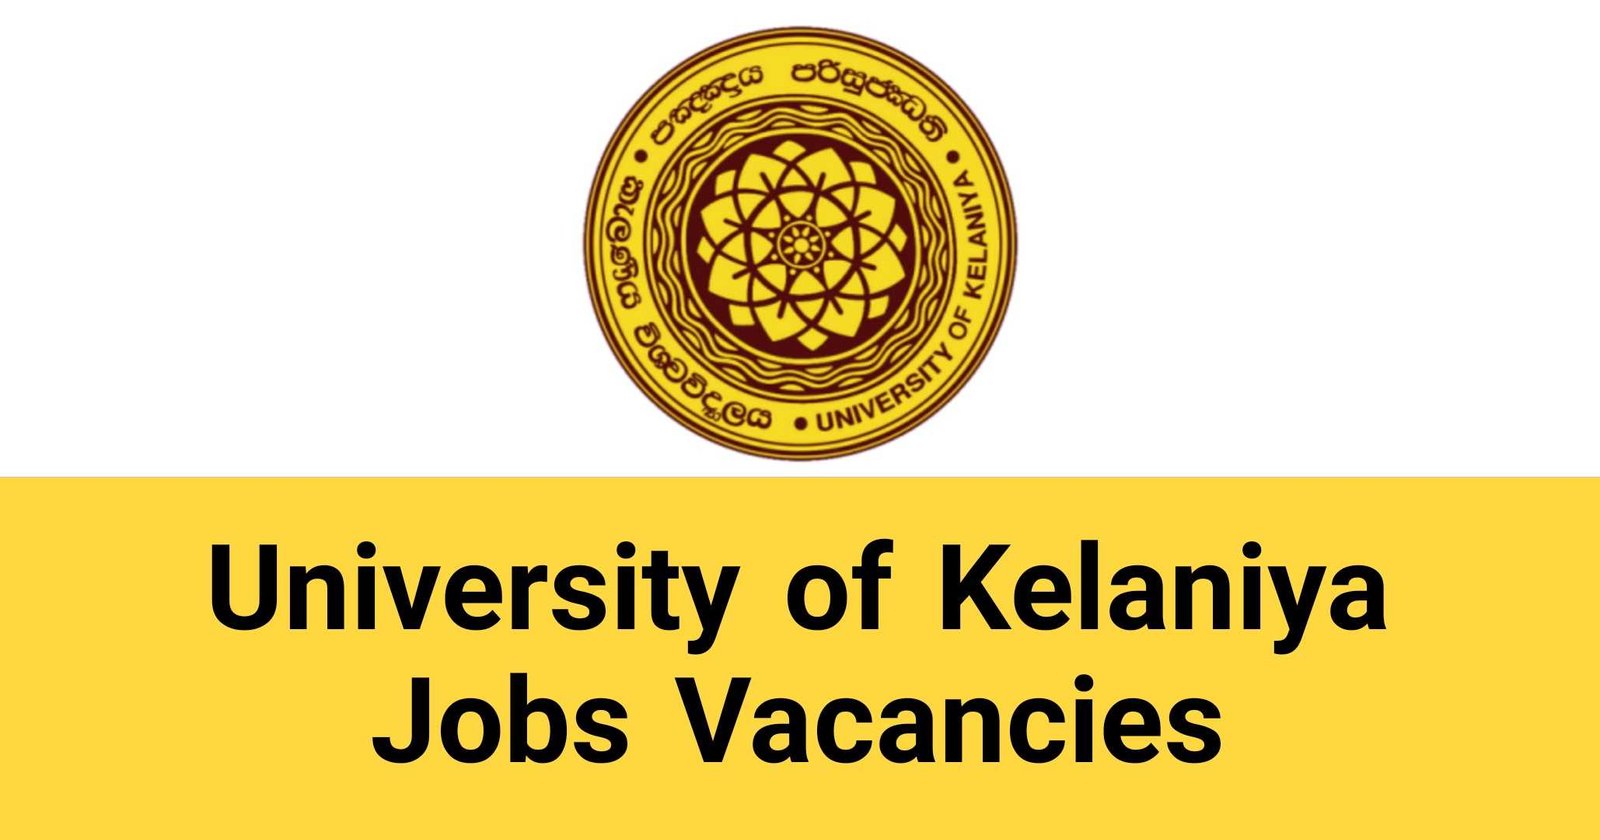 University of Kelaniya Jobs Vacancies Careers